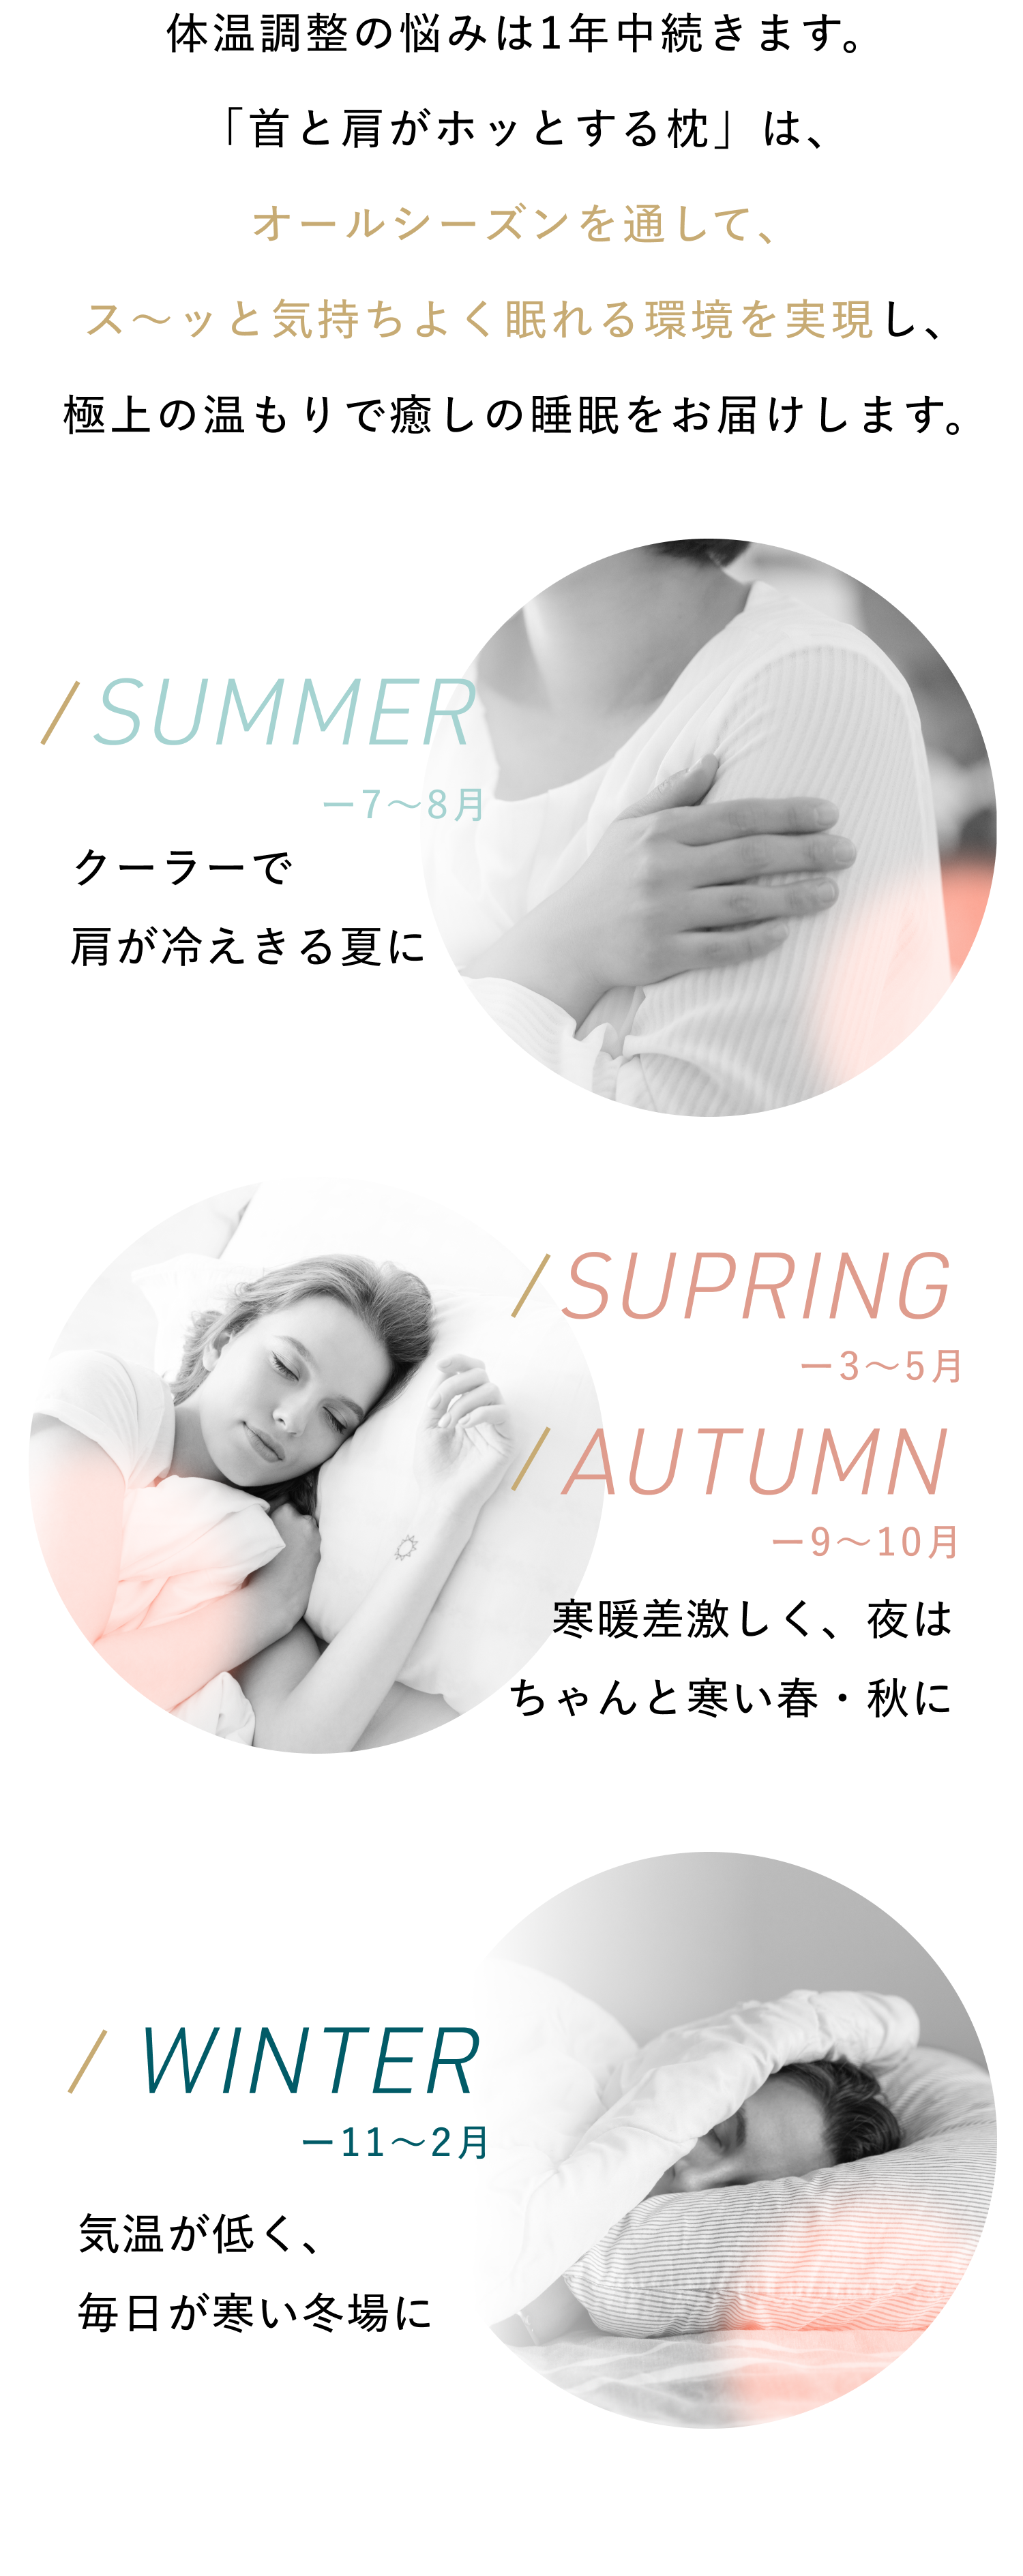 首と肩がホッとする枕 | 首を40度で15分間温めることで心地よい睡眠を手に入れる為のホットまくら